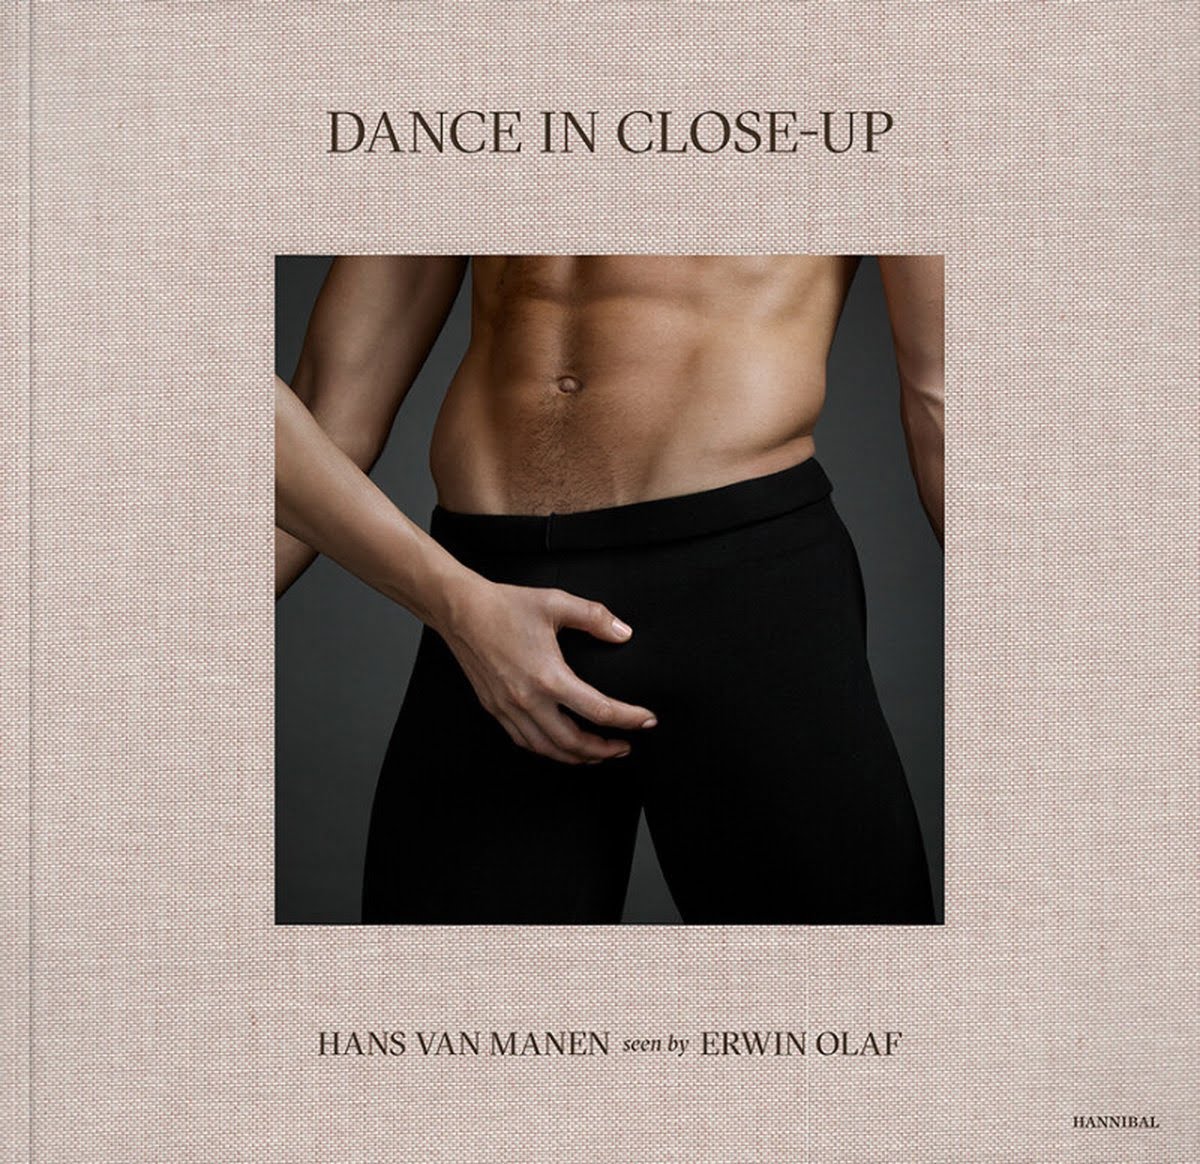 Dance in Close-Up – Erwin Olaf & Hans van Manen